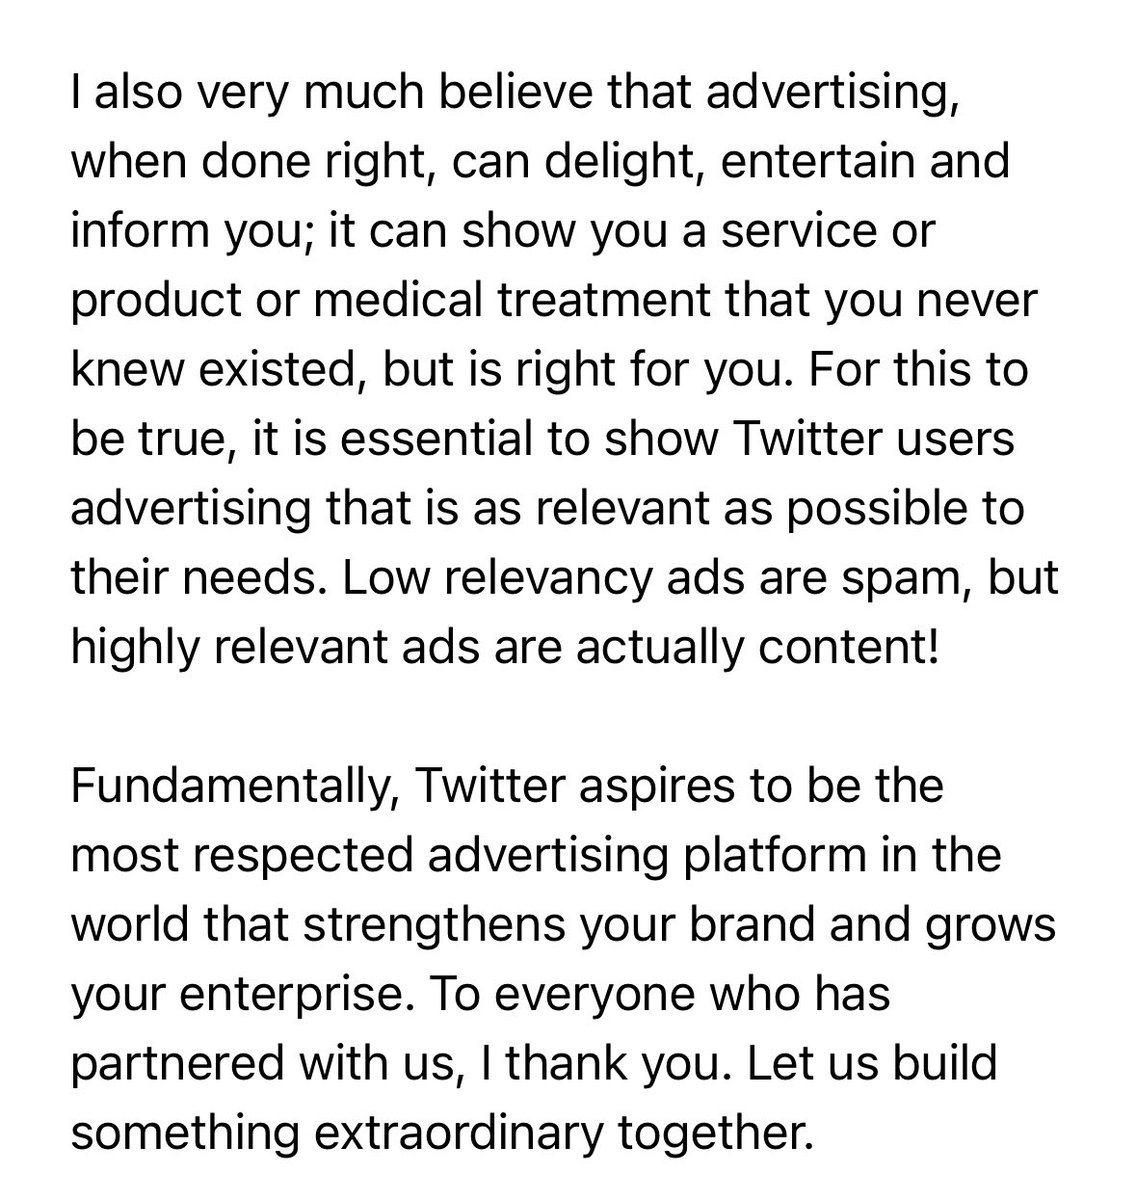 Dear Twitter Advertisers